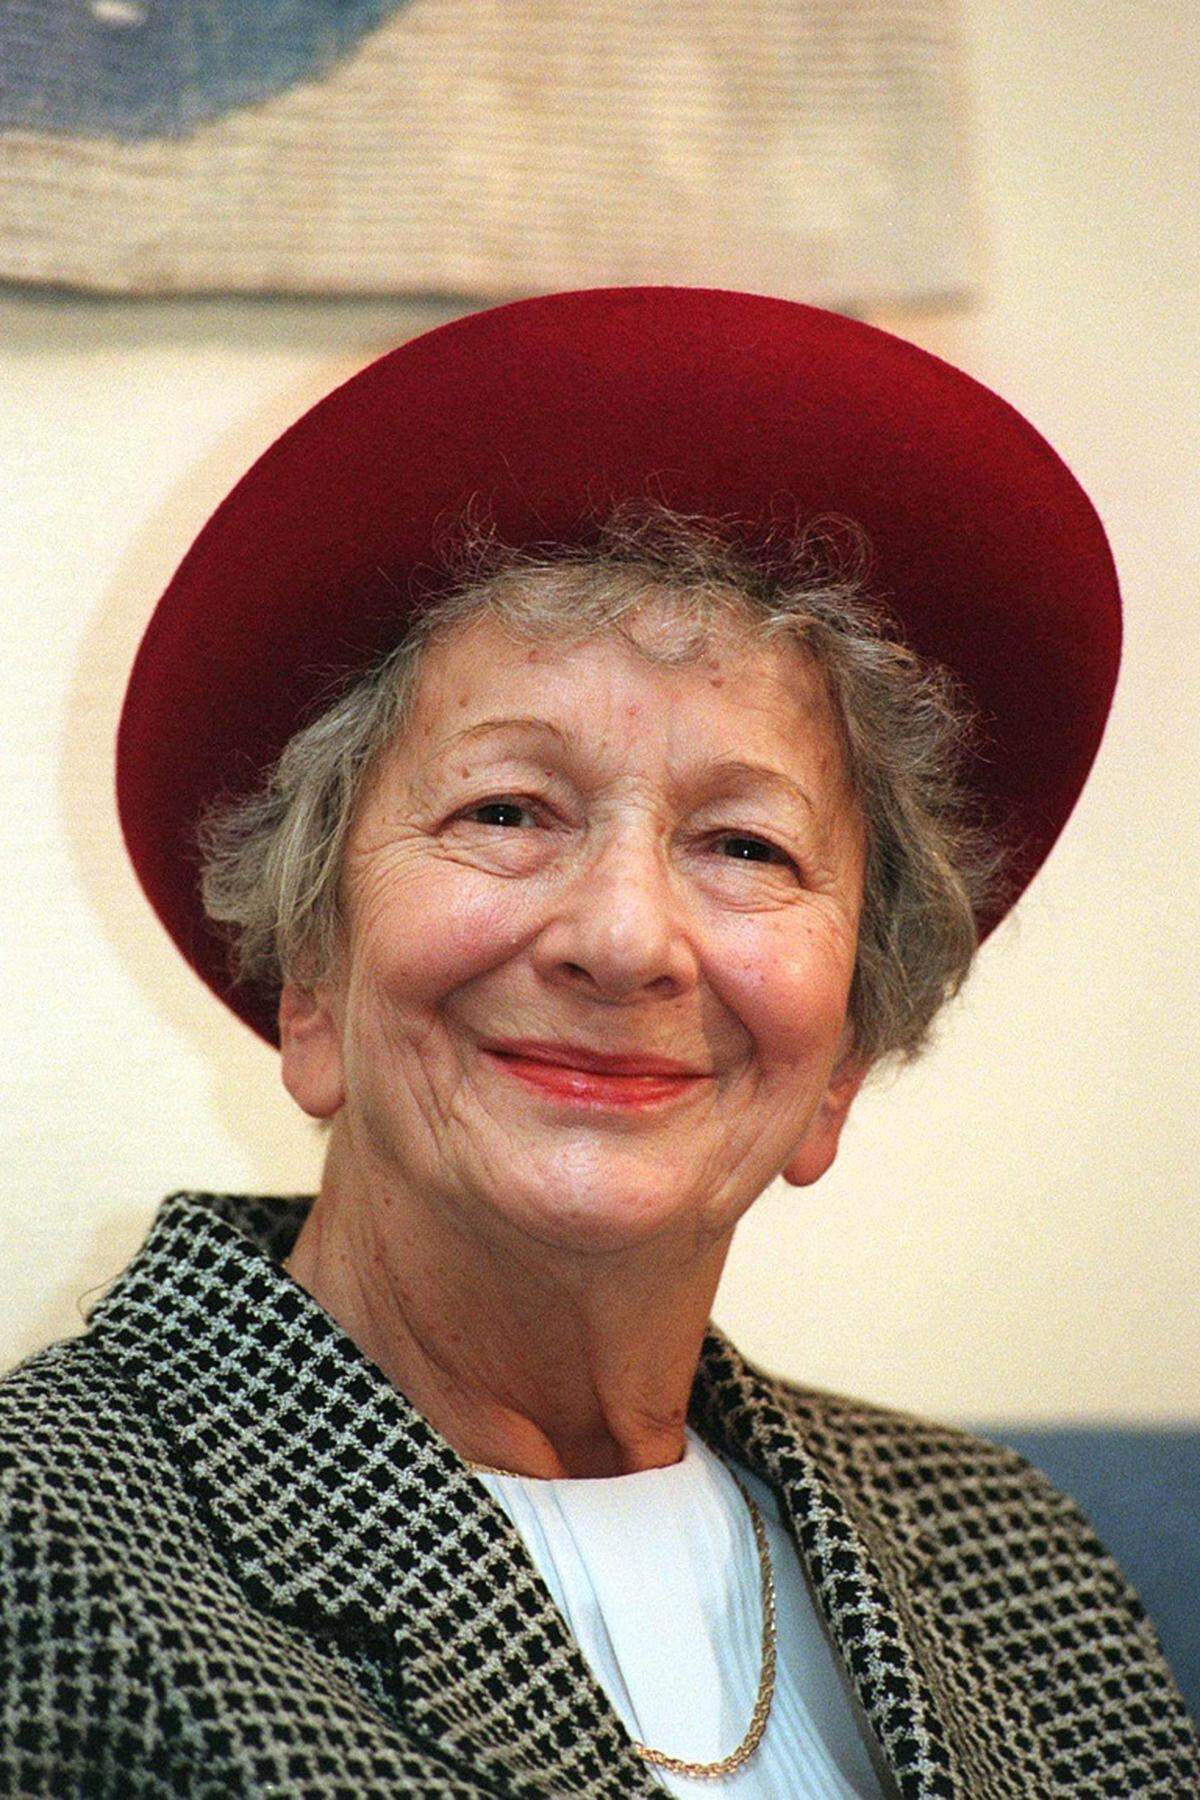 (Polen, 1923 - 2012) Die Lyrikerin erhielt den Nobelpreis für eine Poesie, "die mit ironischer Präzision den historischen und biologischen Zusammenhang in Fragmenten menschlicher Wirklichkeit hervortreten lässt". Sie veröffentlichte seit ihrer 1945 begonnenen literarischen Laufbahn insgesamt 16 Gedichtbände.